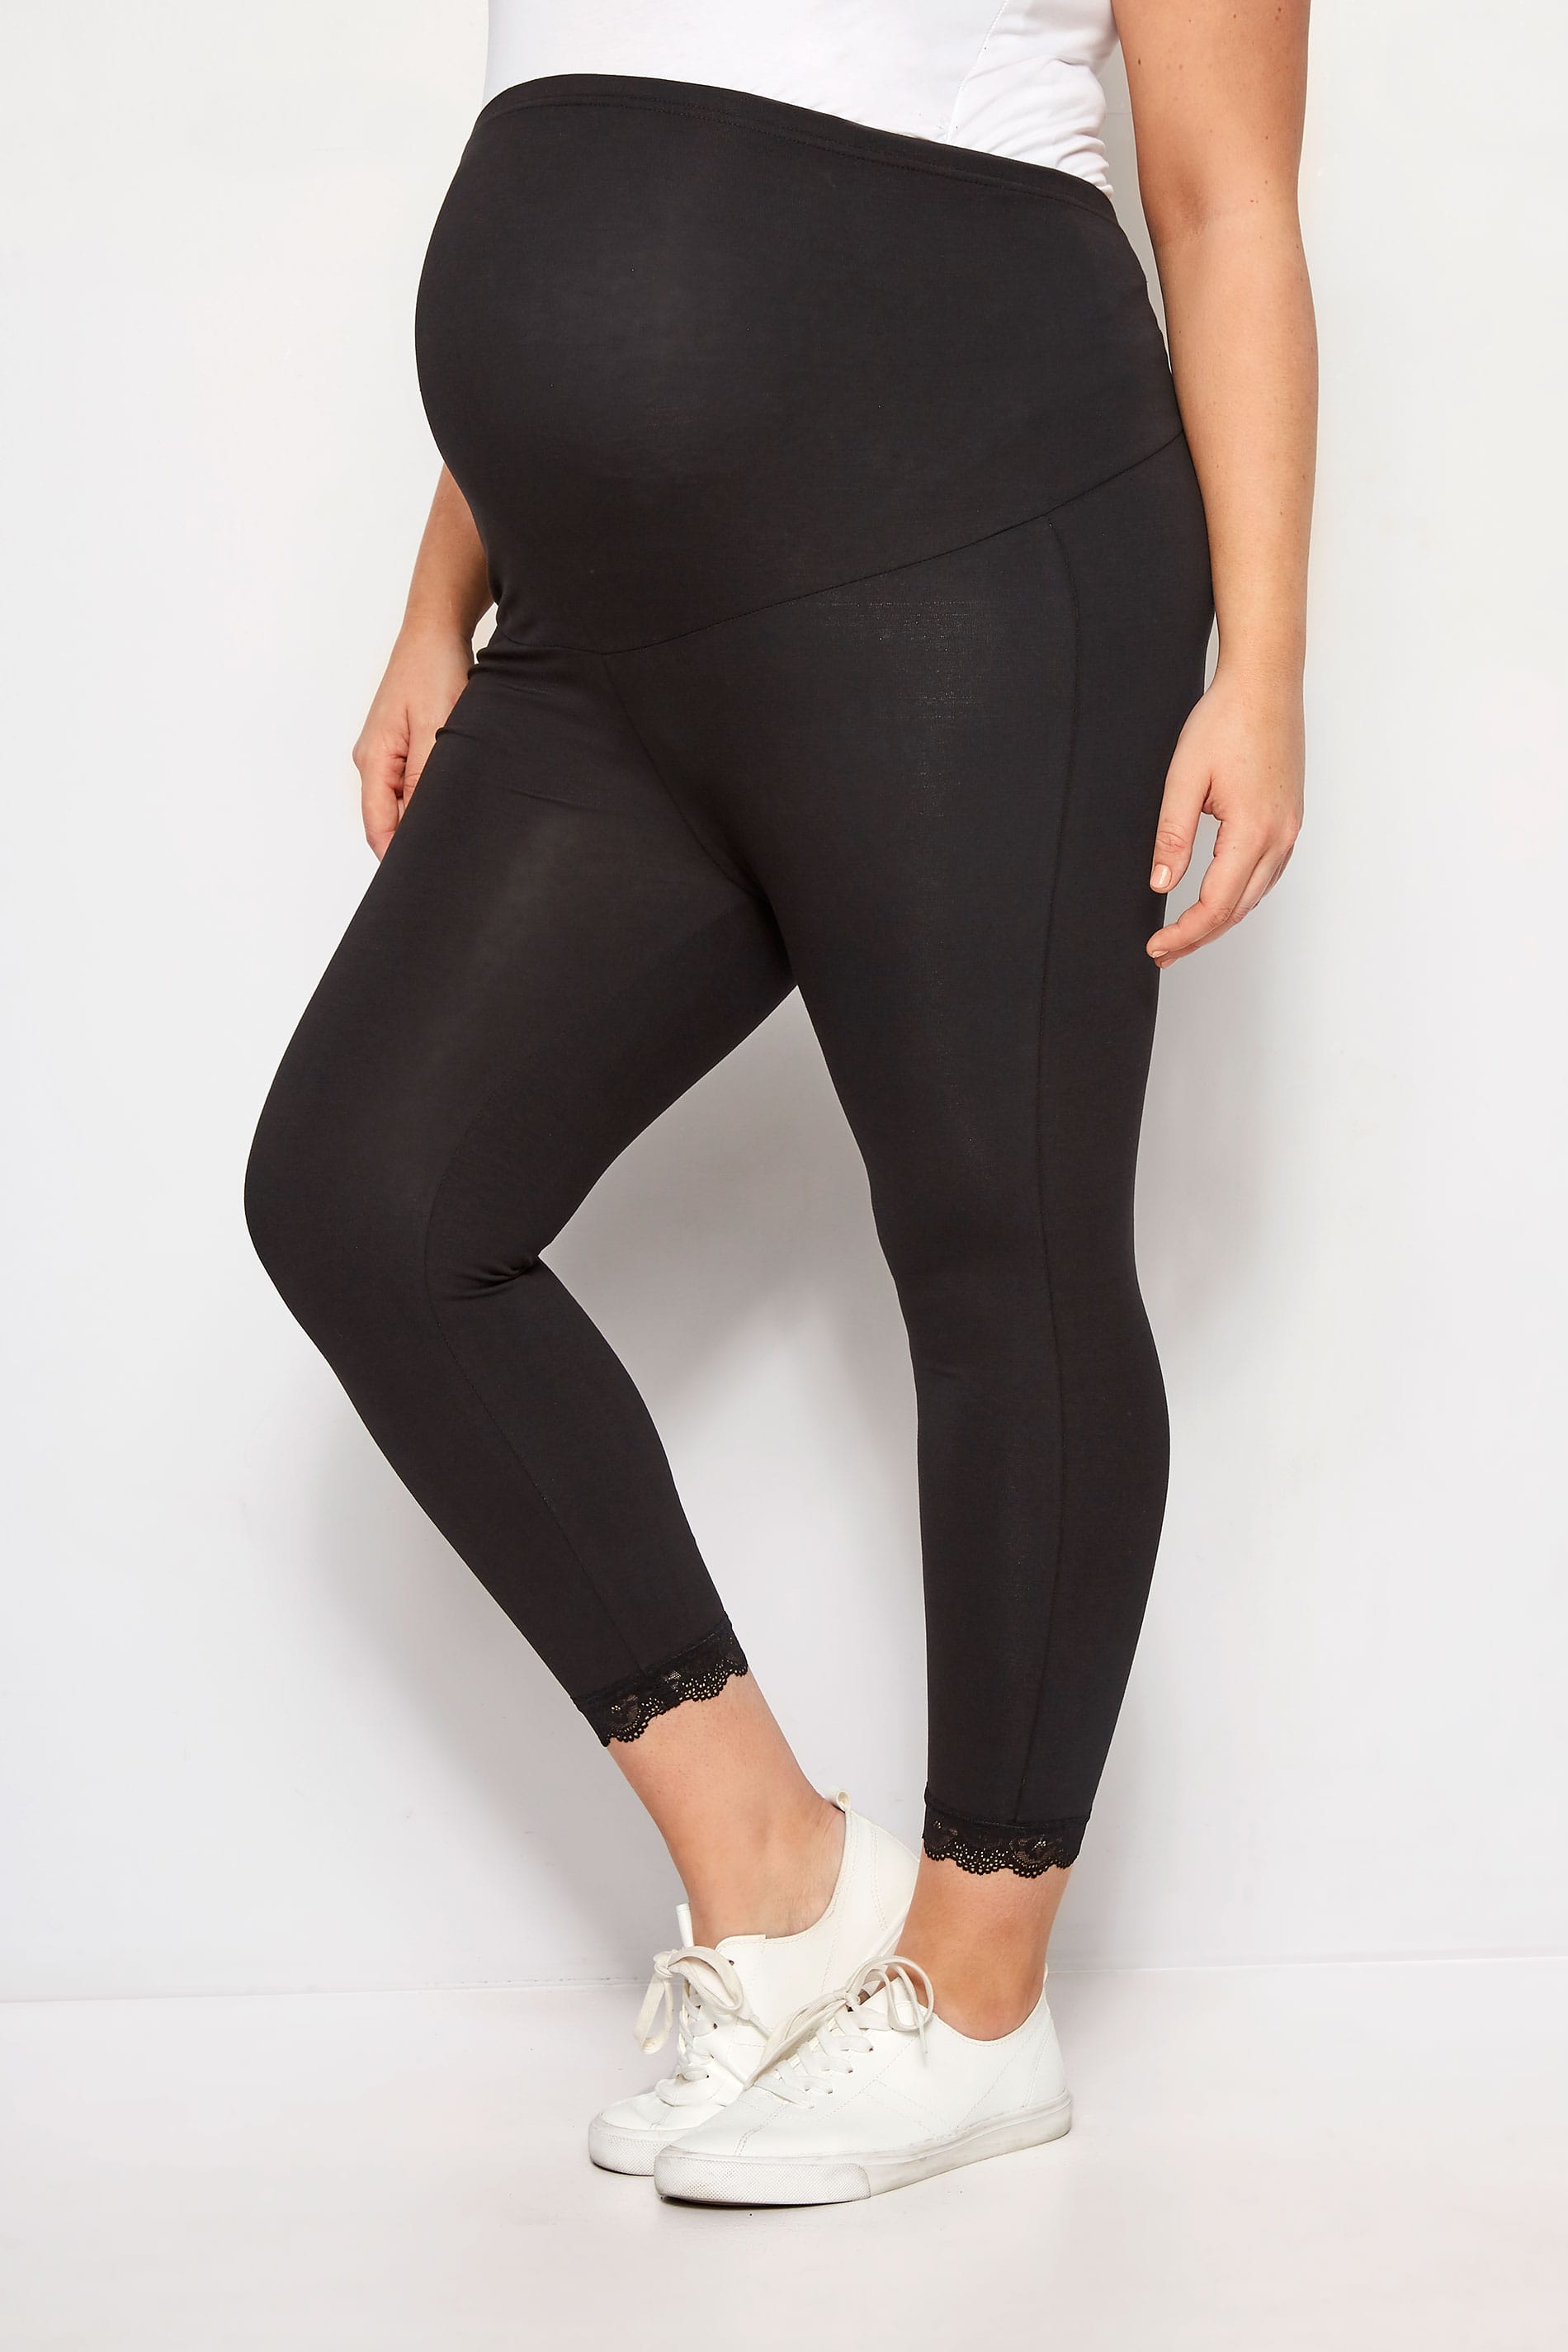 BUMP IT UP MATERNITY Black Lace Trim Crop Leggings | Plus Sizes 16 to ...